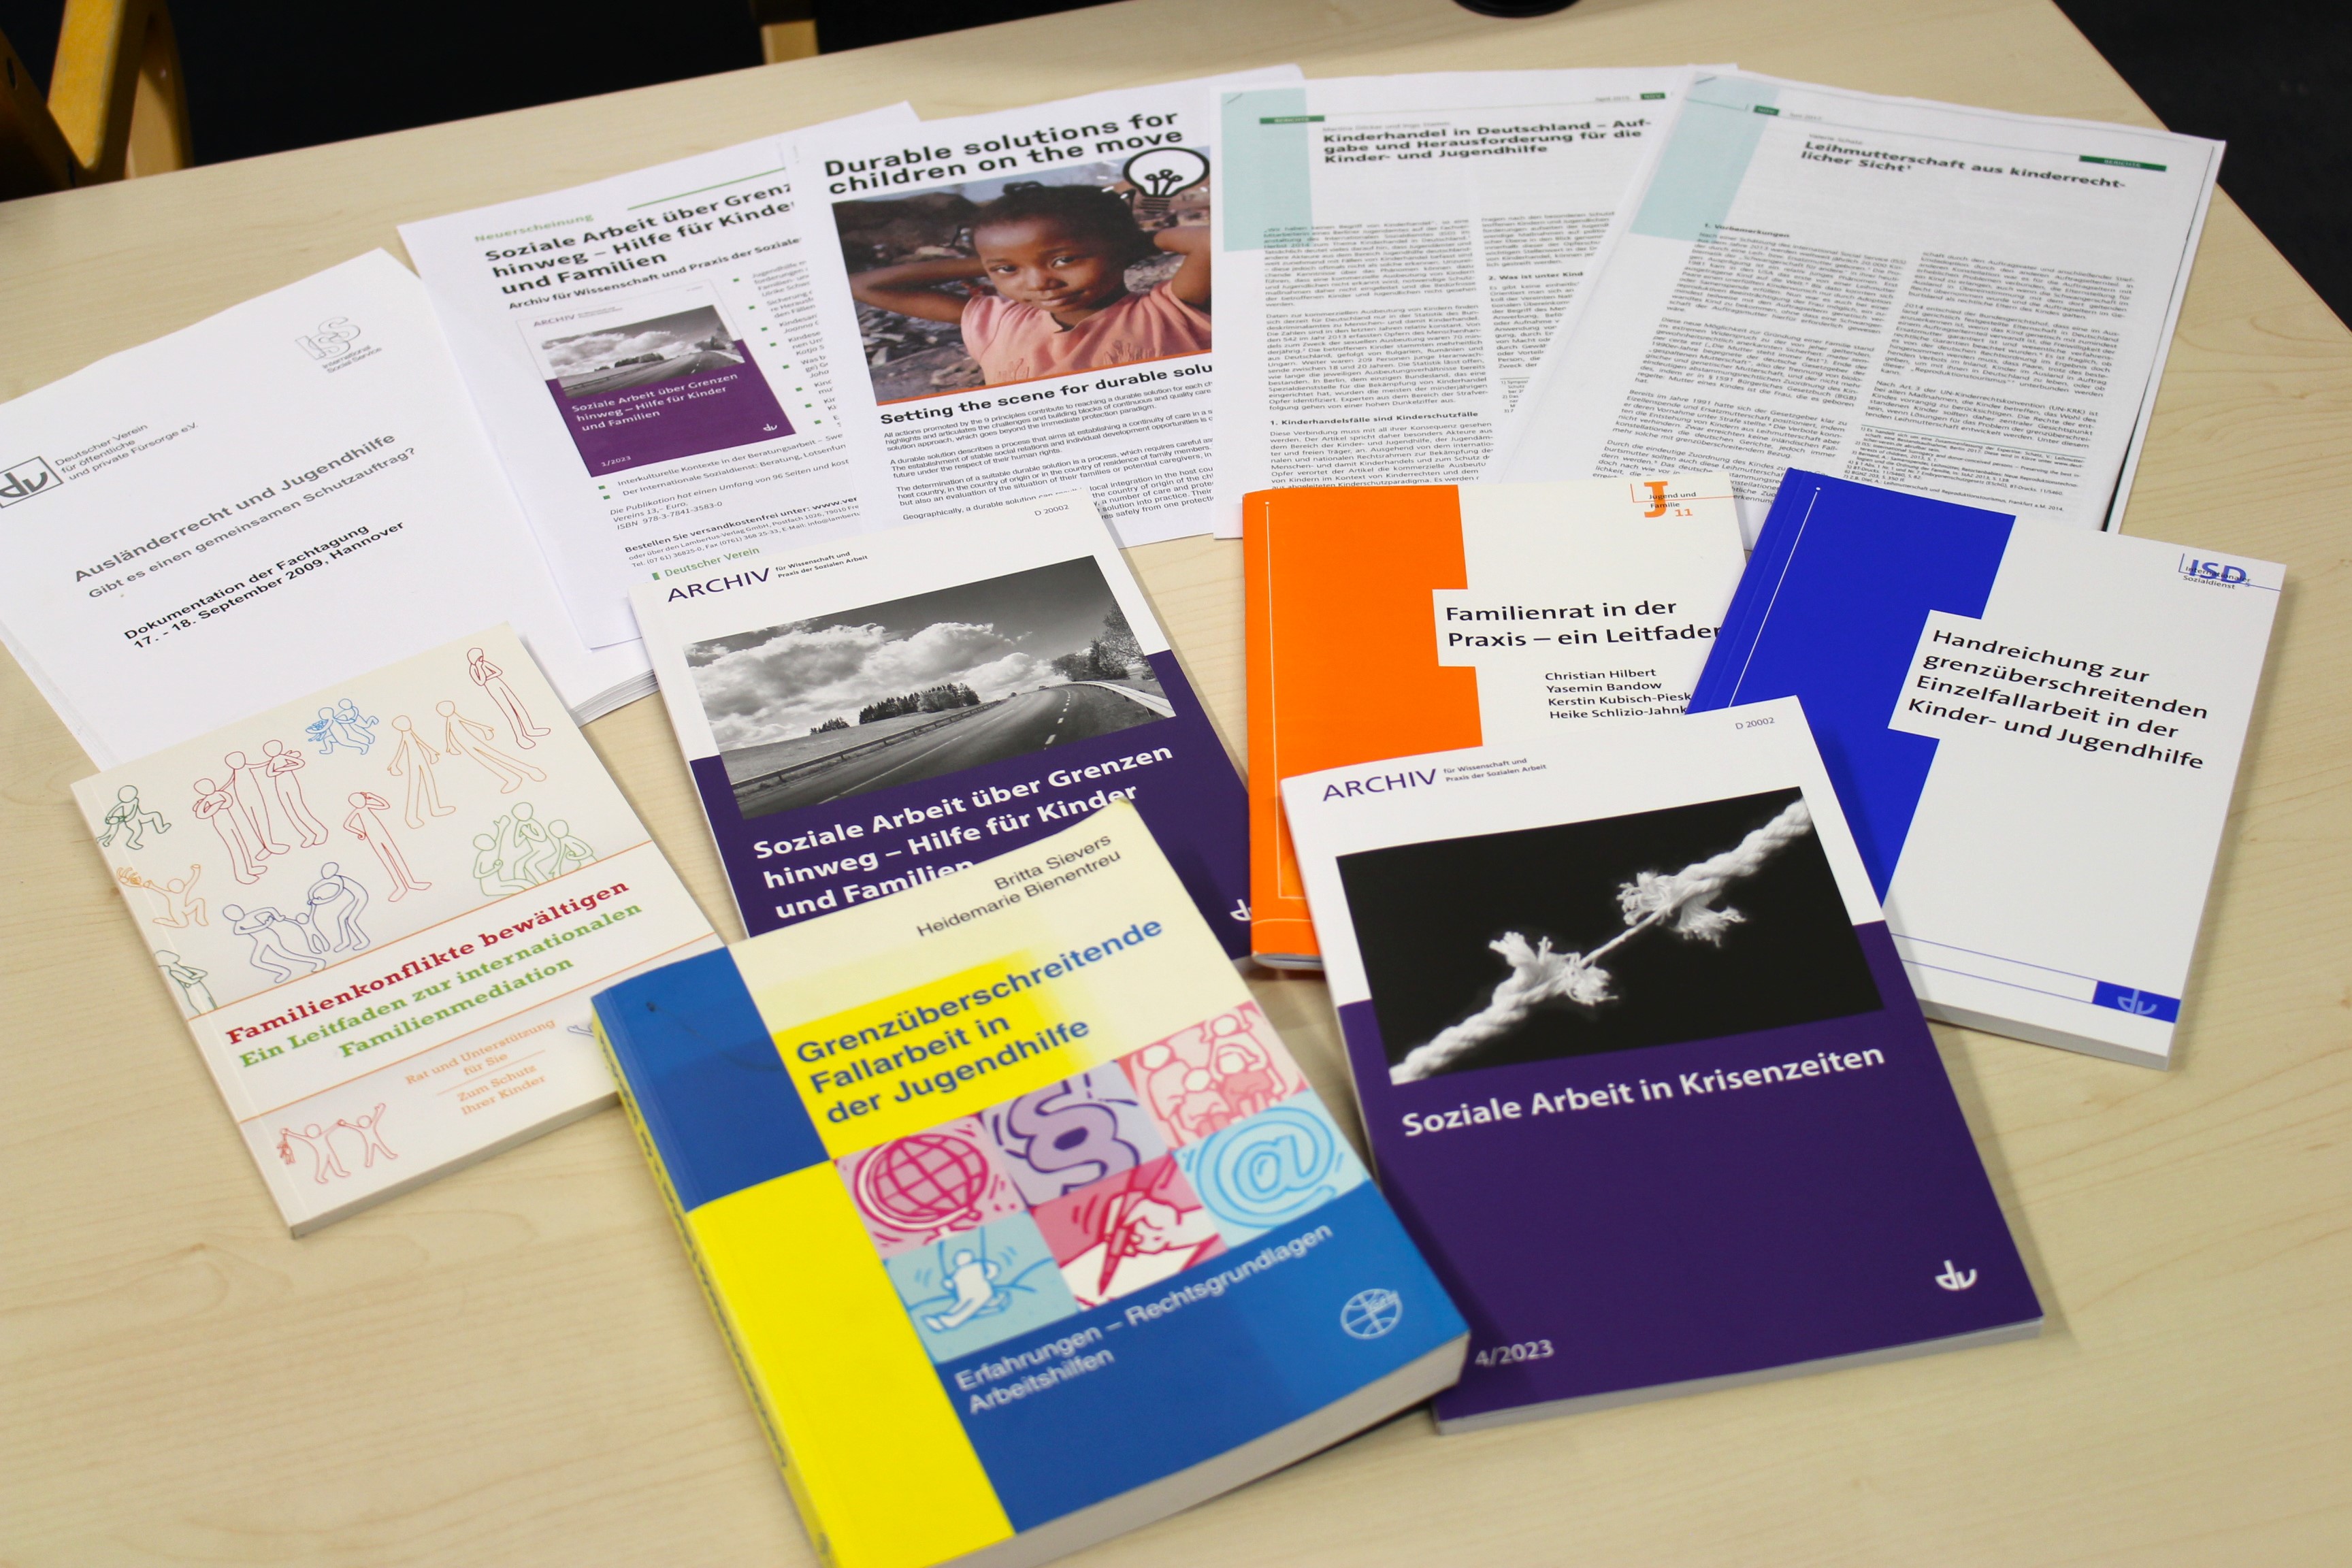 Das Bild zeigt eine Auswahl von Veröffentlichungen des ISD, die auf einem Tisch ausgebreitet sind – 